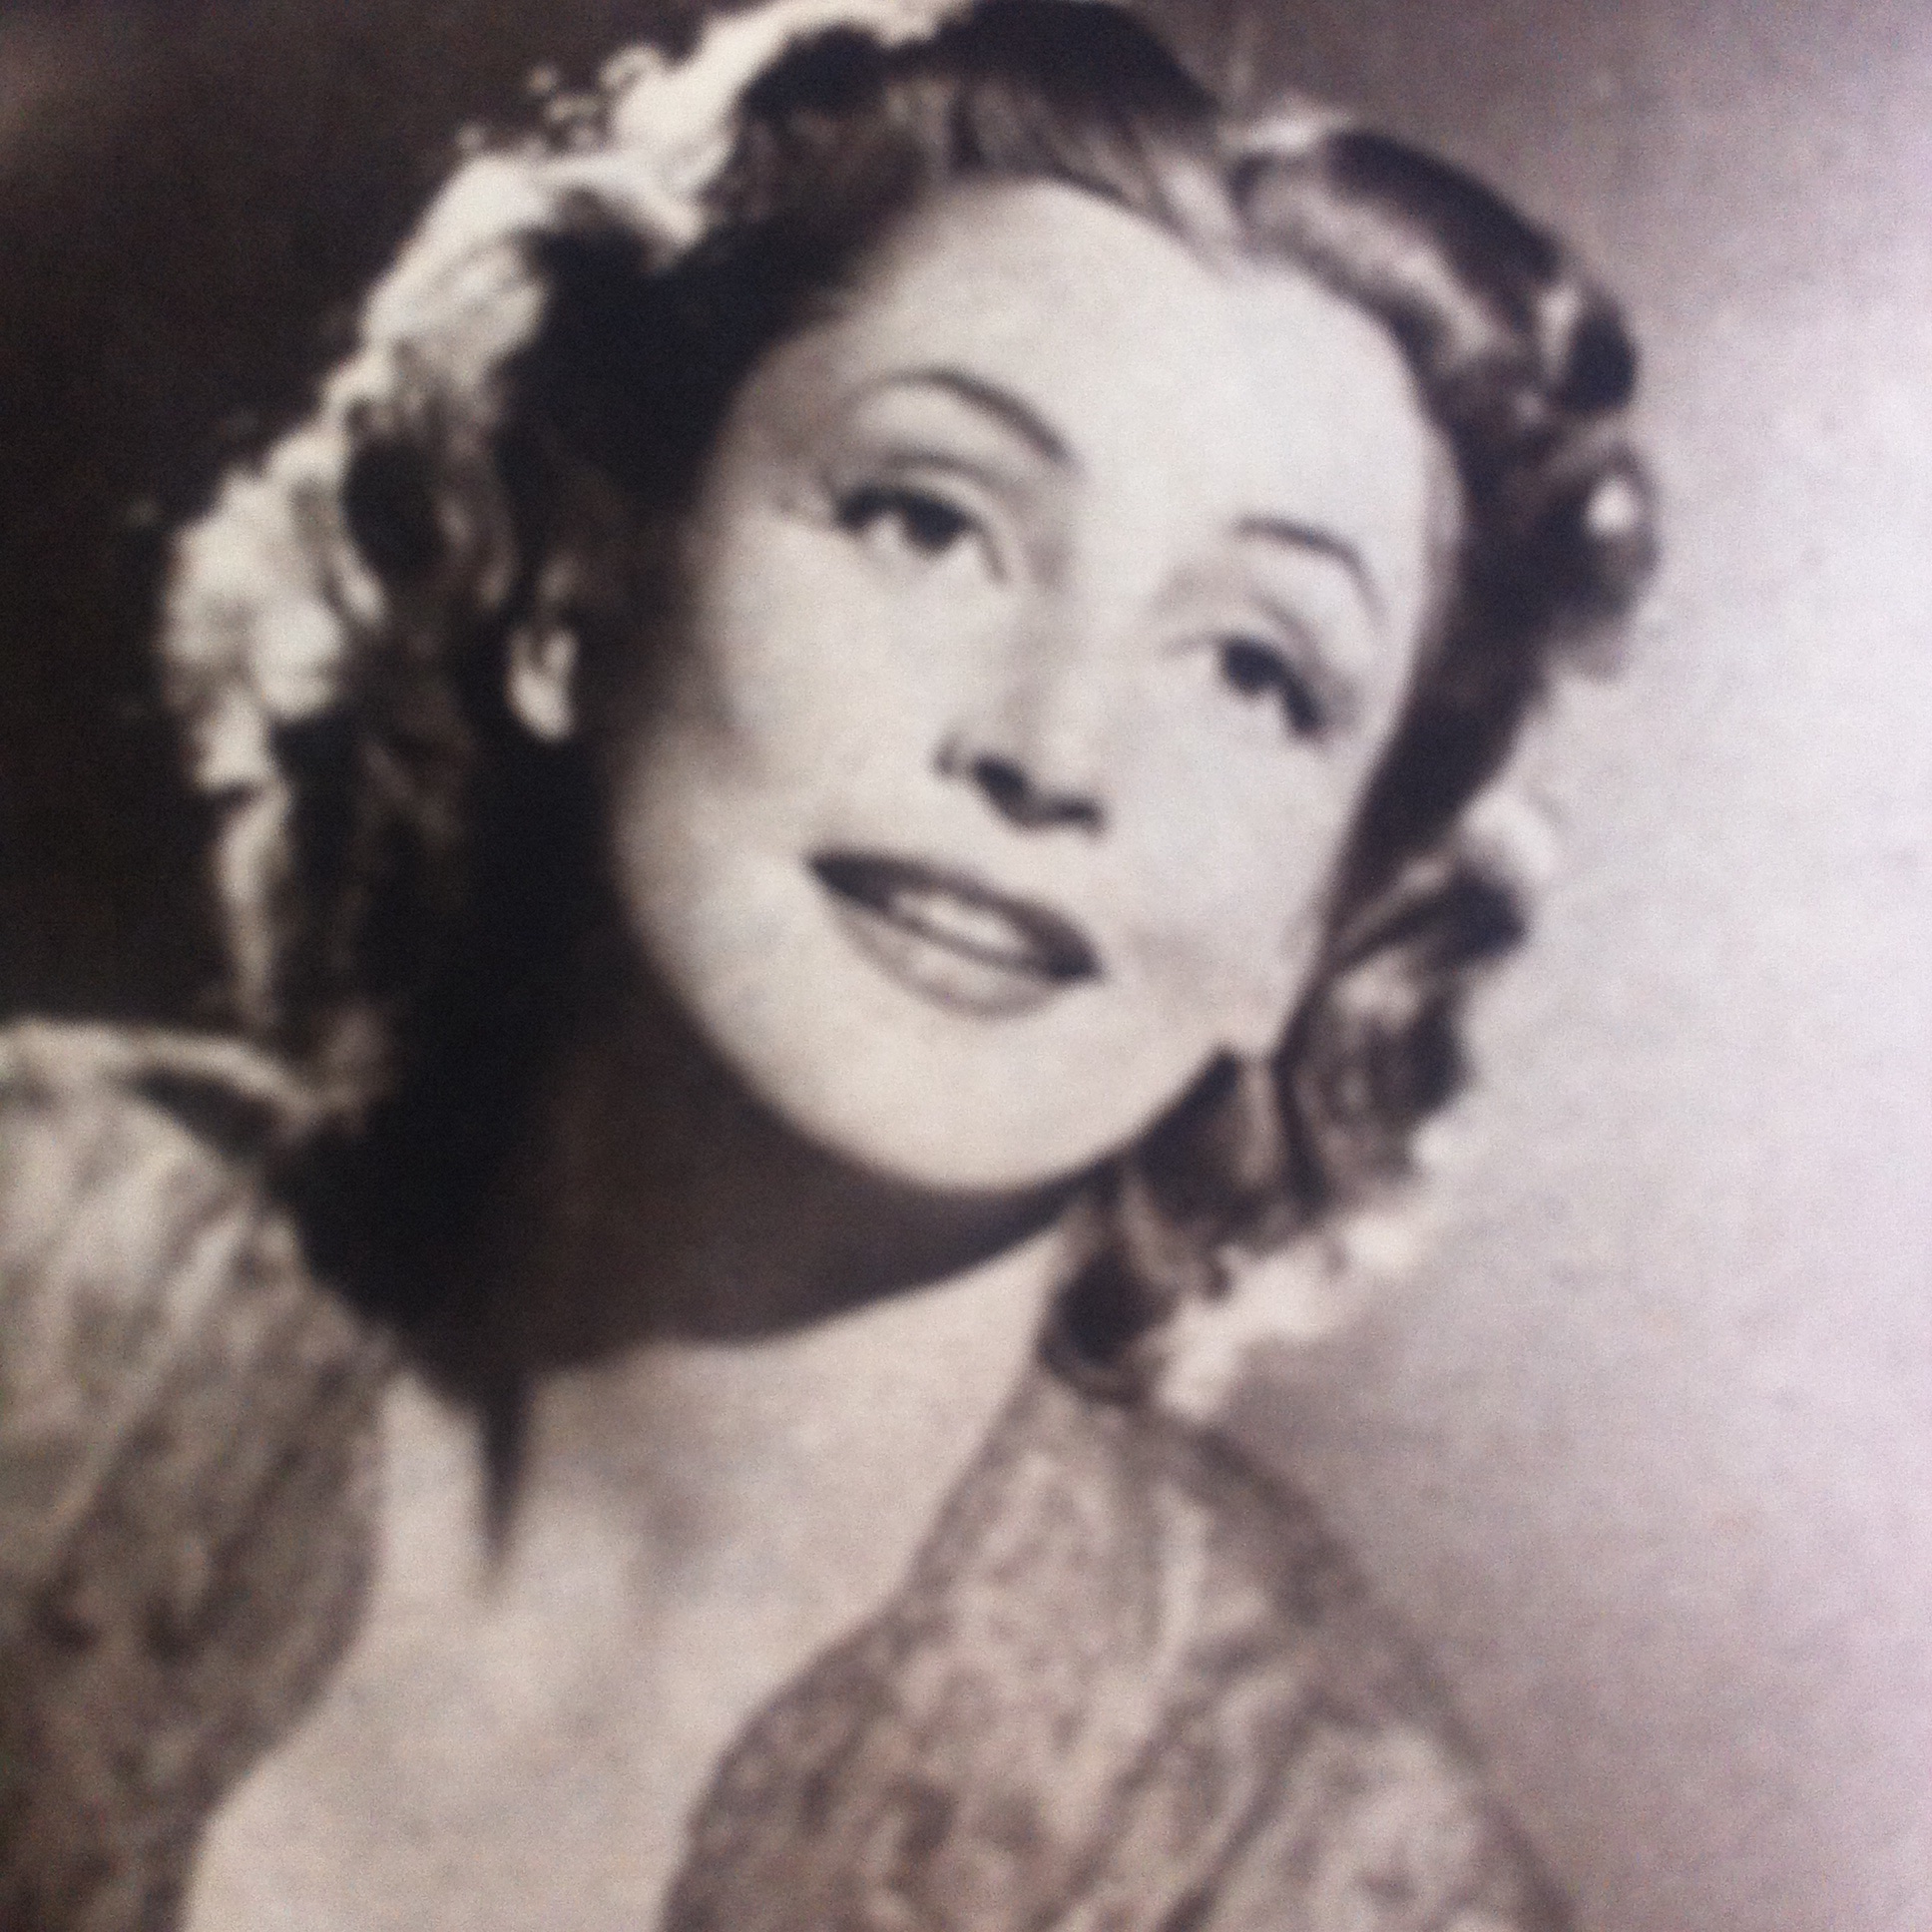 The Woman's Angle (1952) Screenshot 1